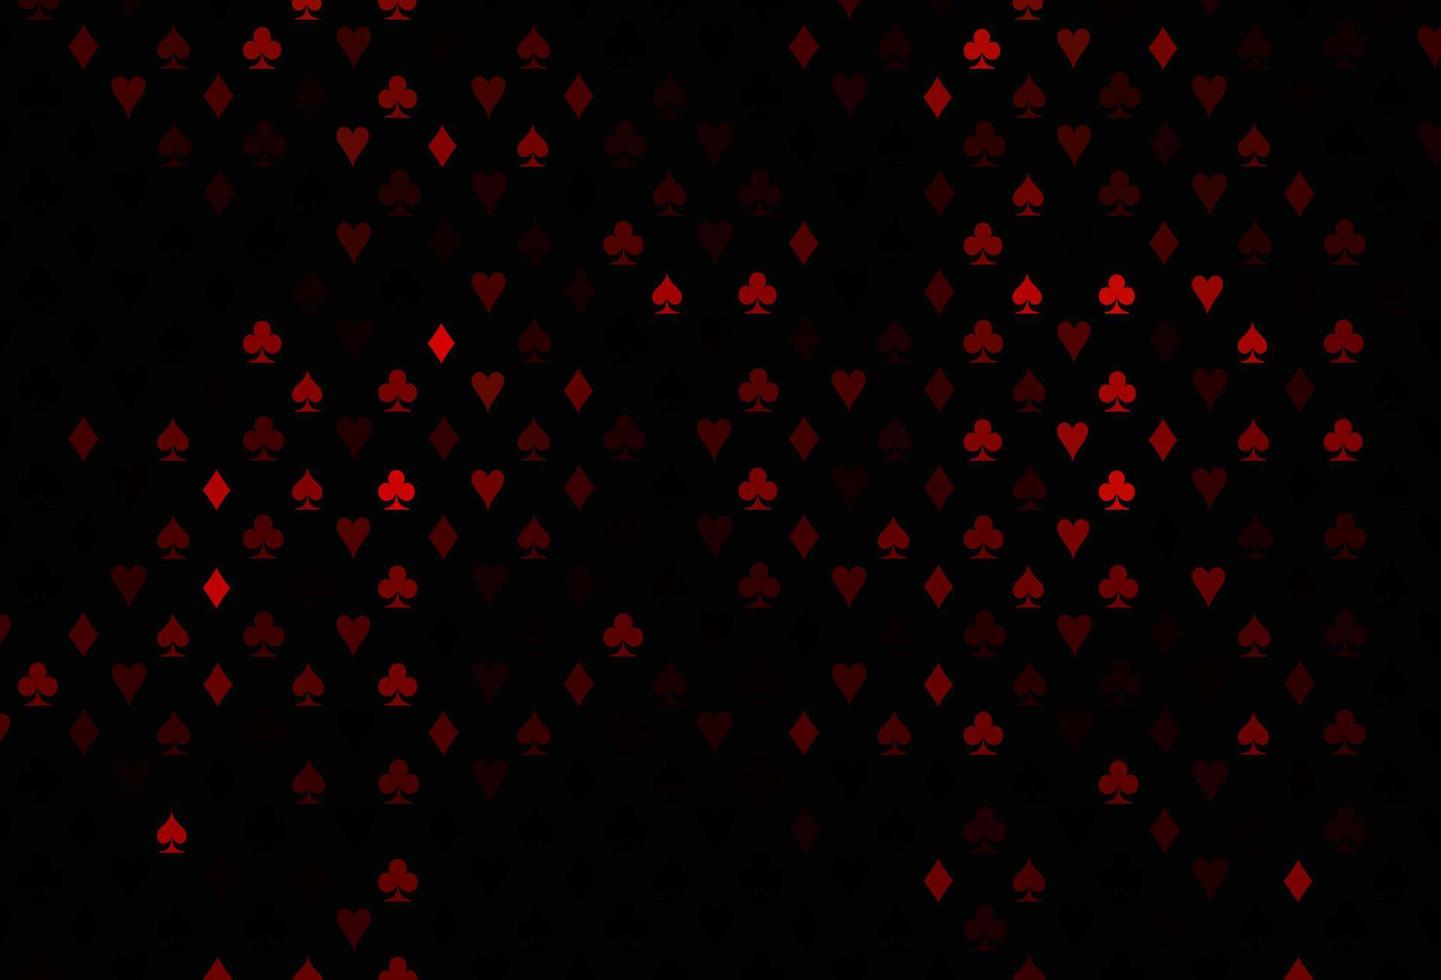 cubierta de vector rojo oscuro con símbolos de apuesta.